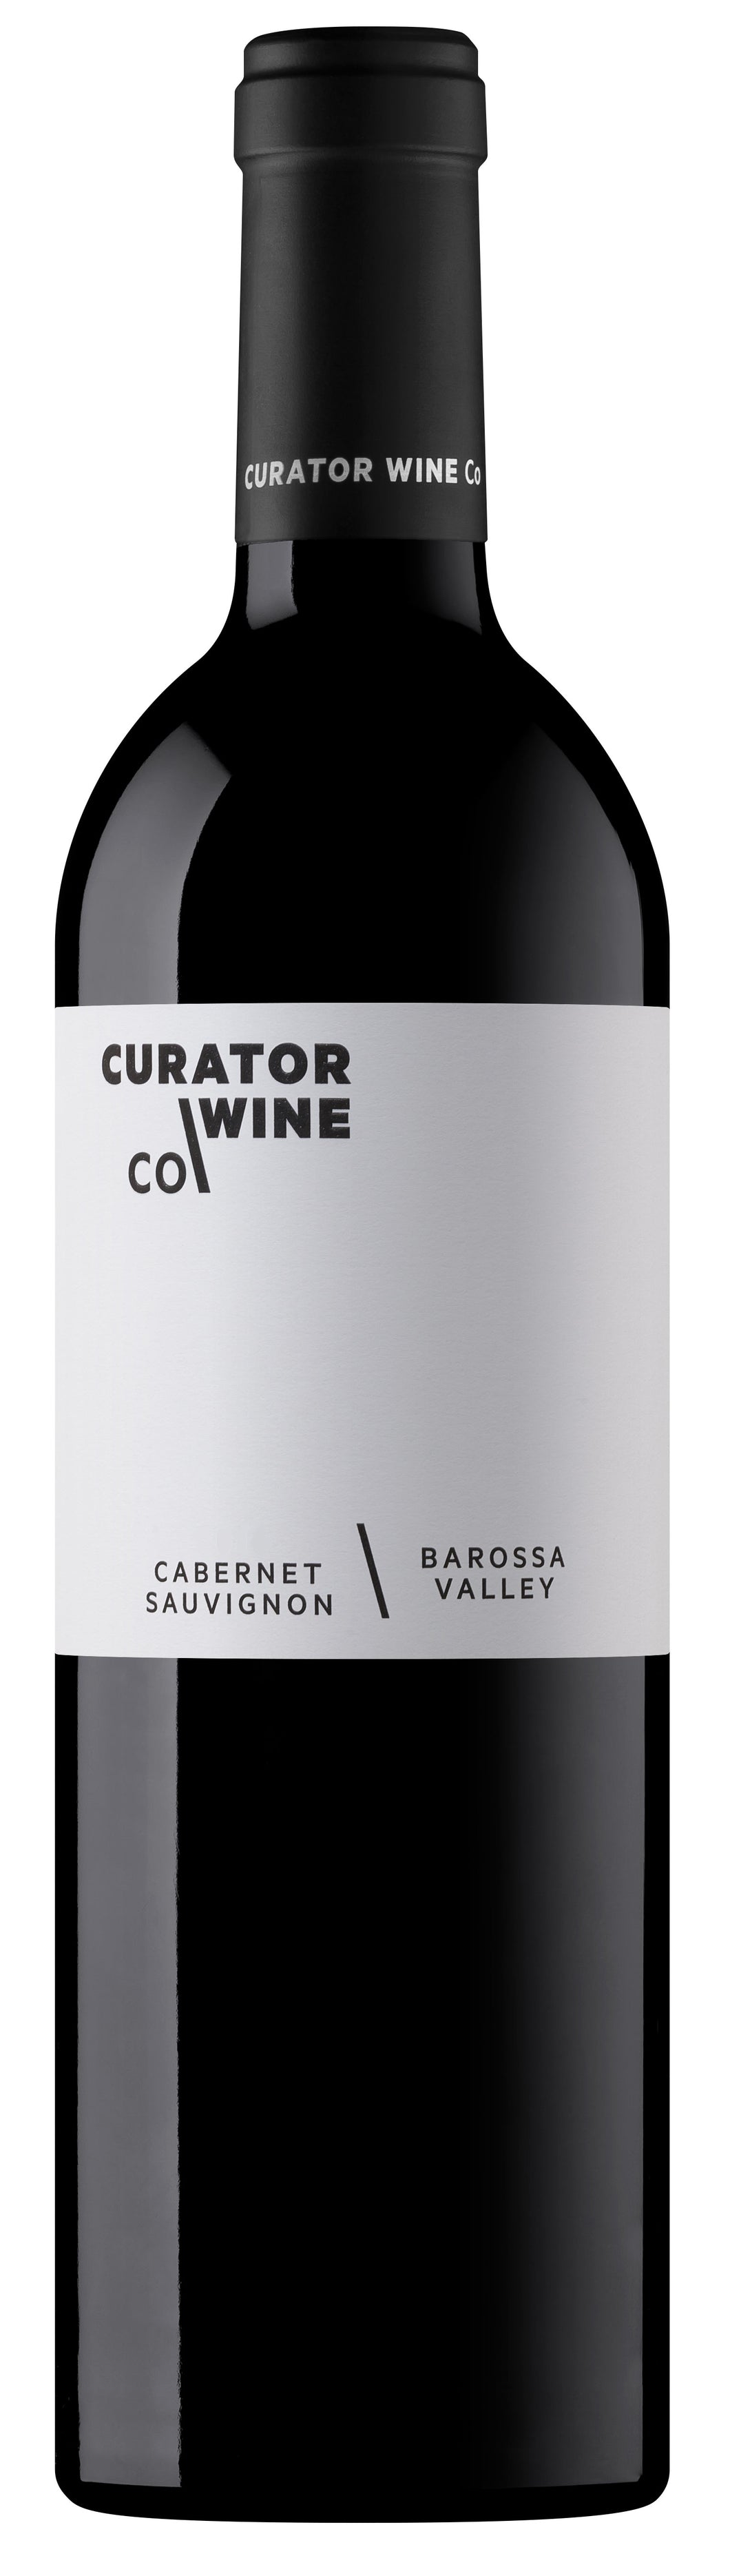 Curator Wines Co. - Cabernet Sauvignon - 2019